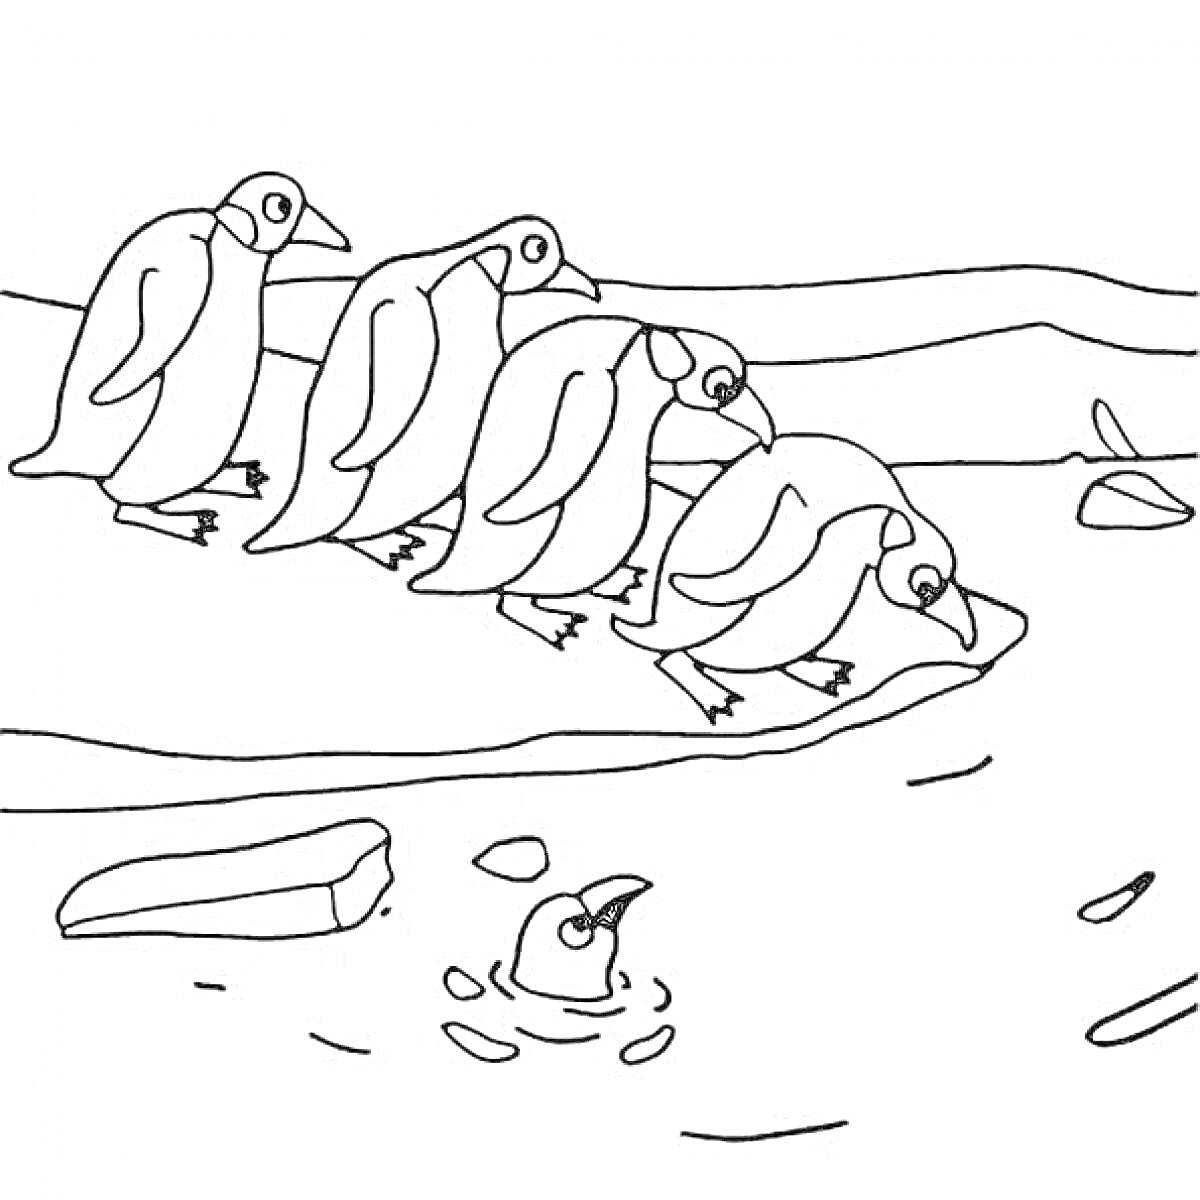 Пингвины у берега с одним плавающим в воде